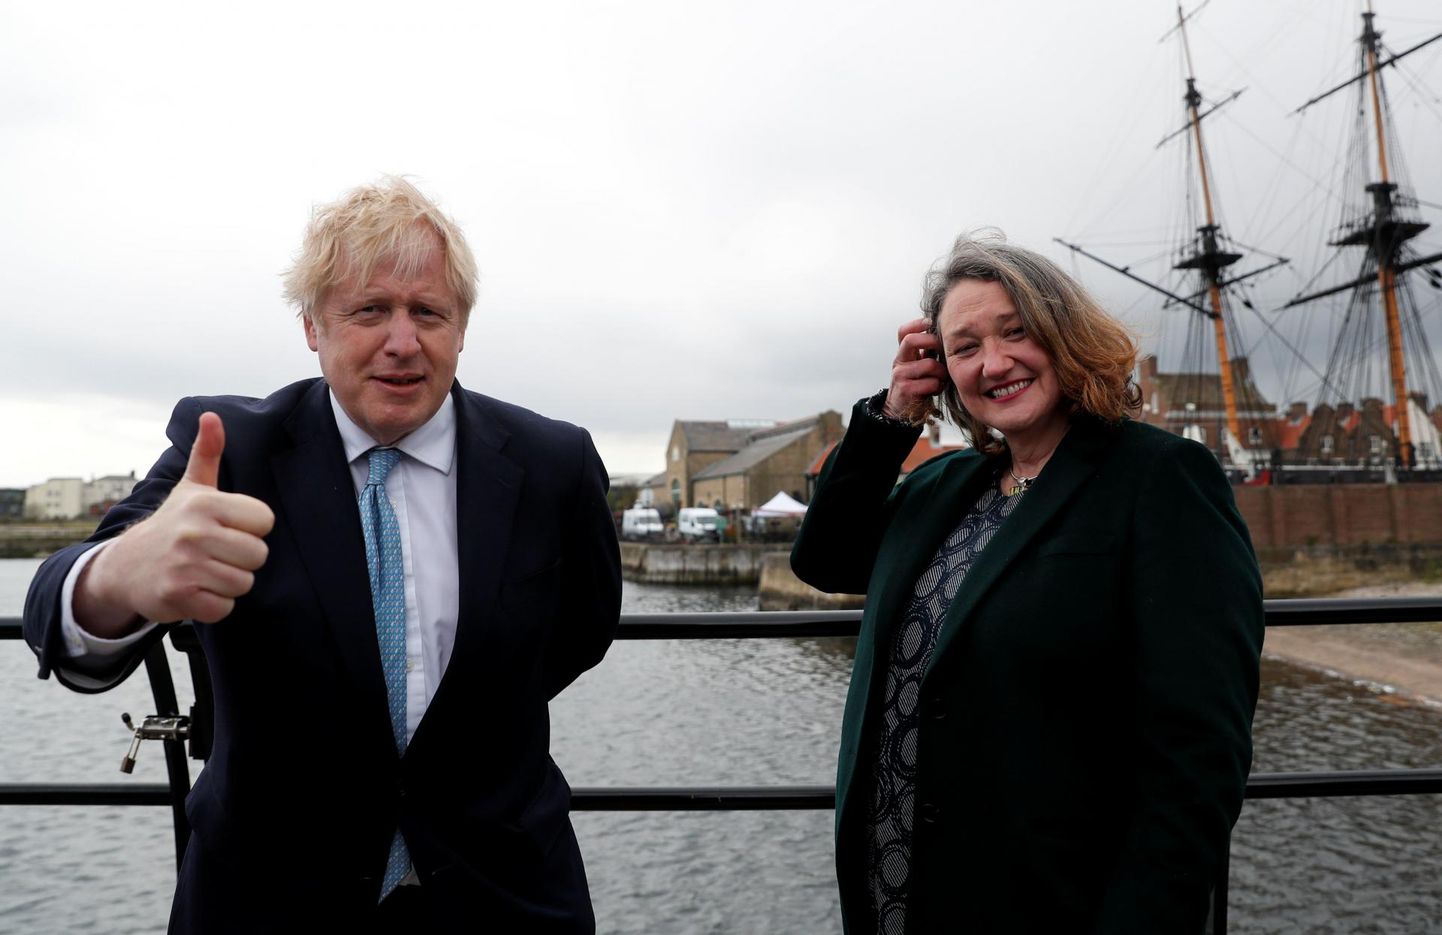 Briti peaminister Boris Johnson (vasakul) tähistamas tooride valimisvõitu Hartlepoolis, kust Westministerisse valiti Jill Mortimer (paremal). 